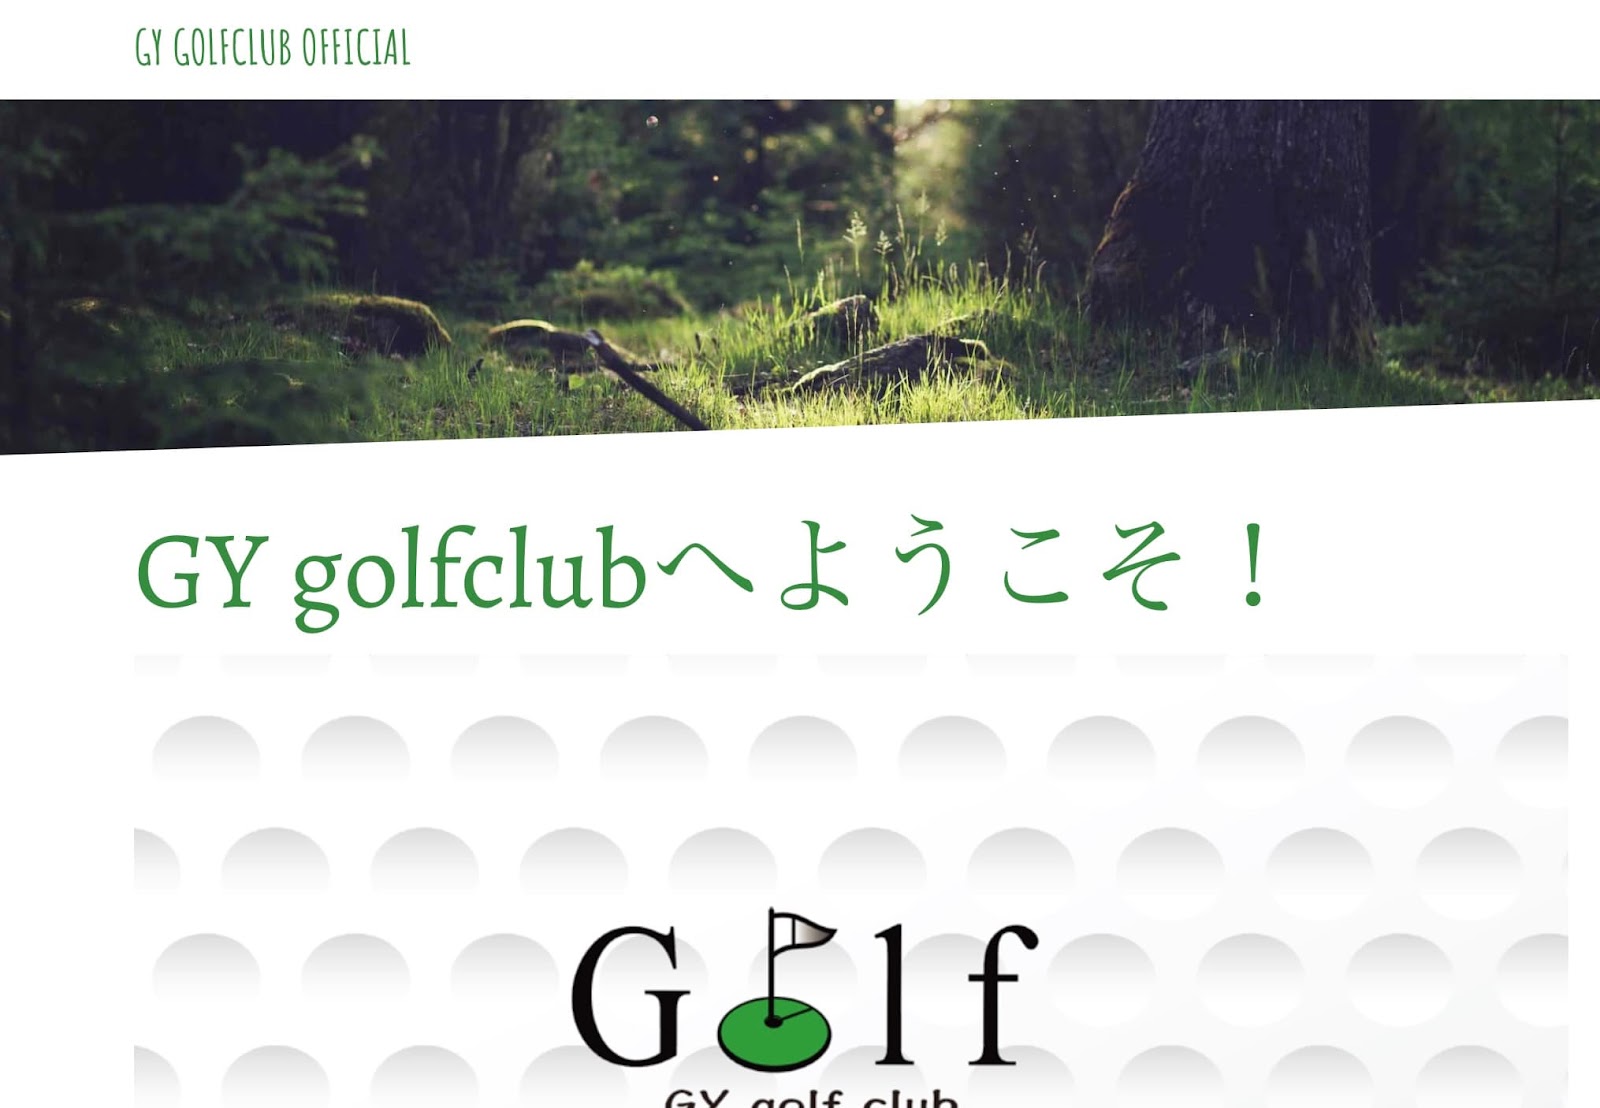 GY golf club